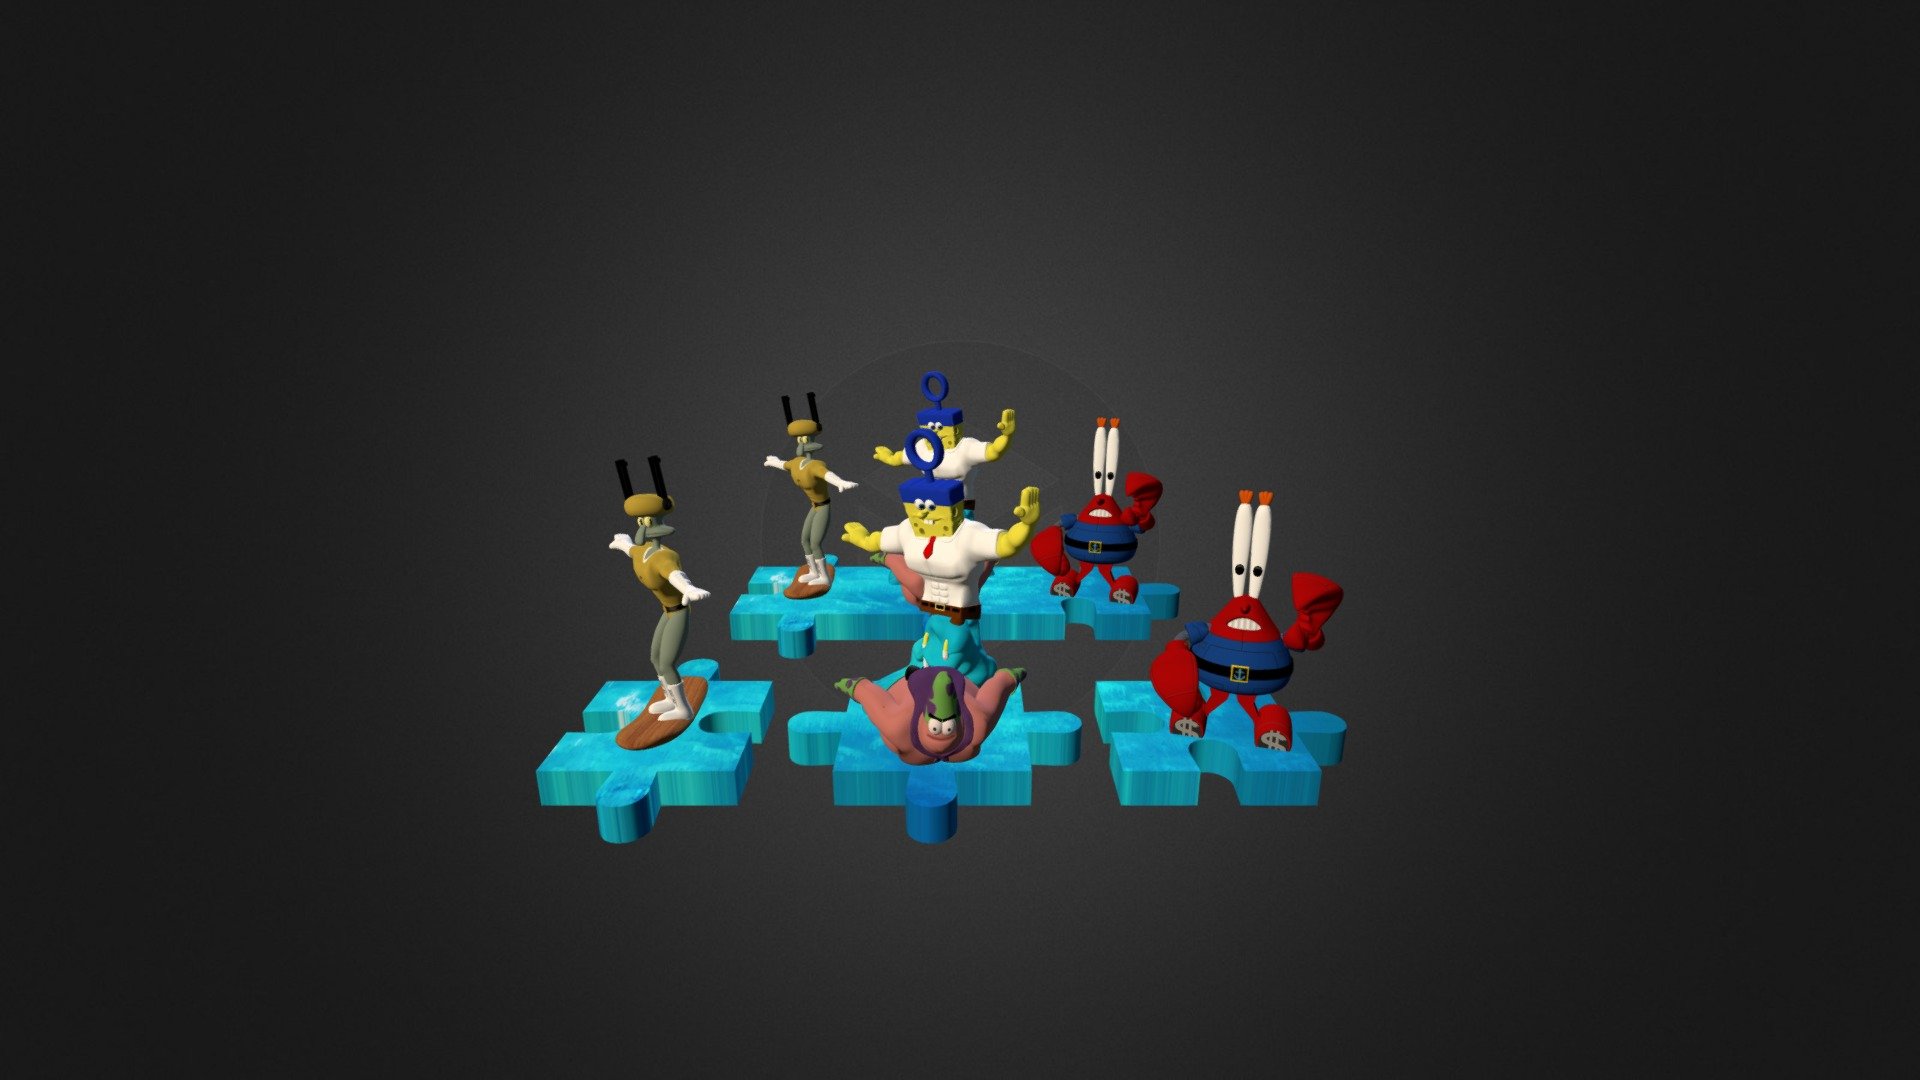 Spongebobs Puzzle 3D Print - 3D model by 3DCloud.company (@3dcloud) 3d model